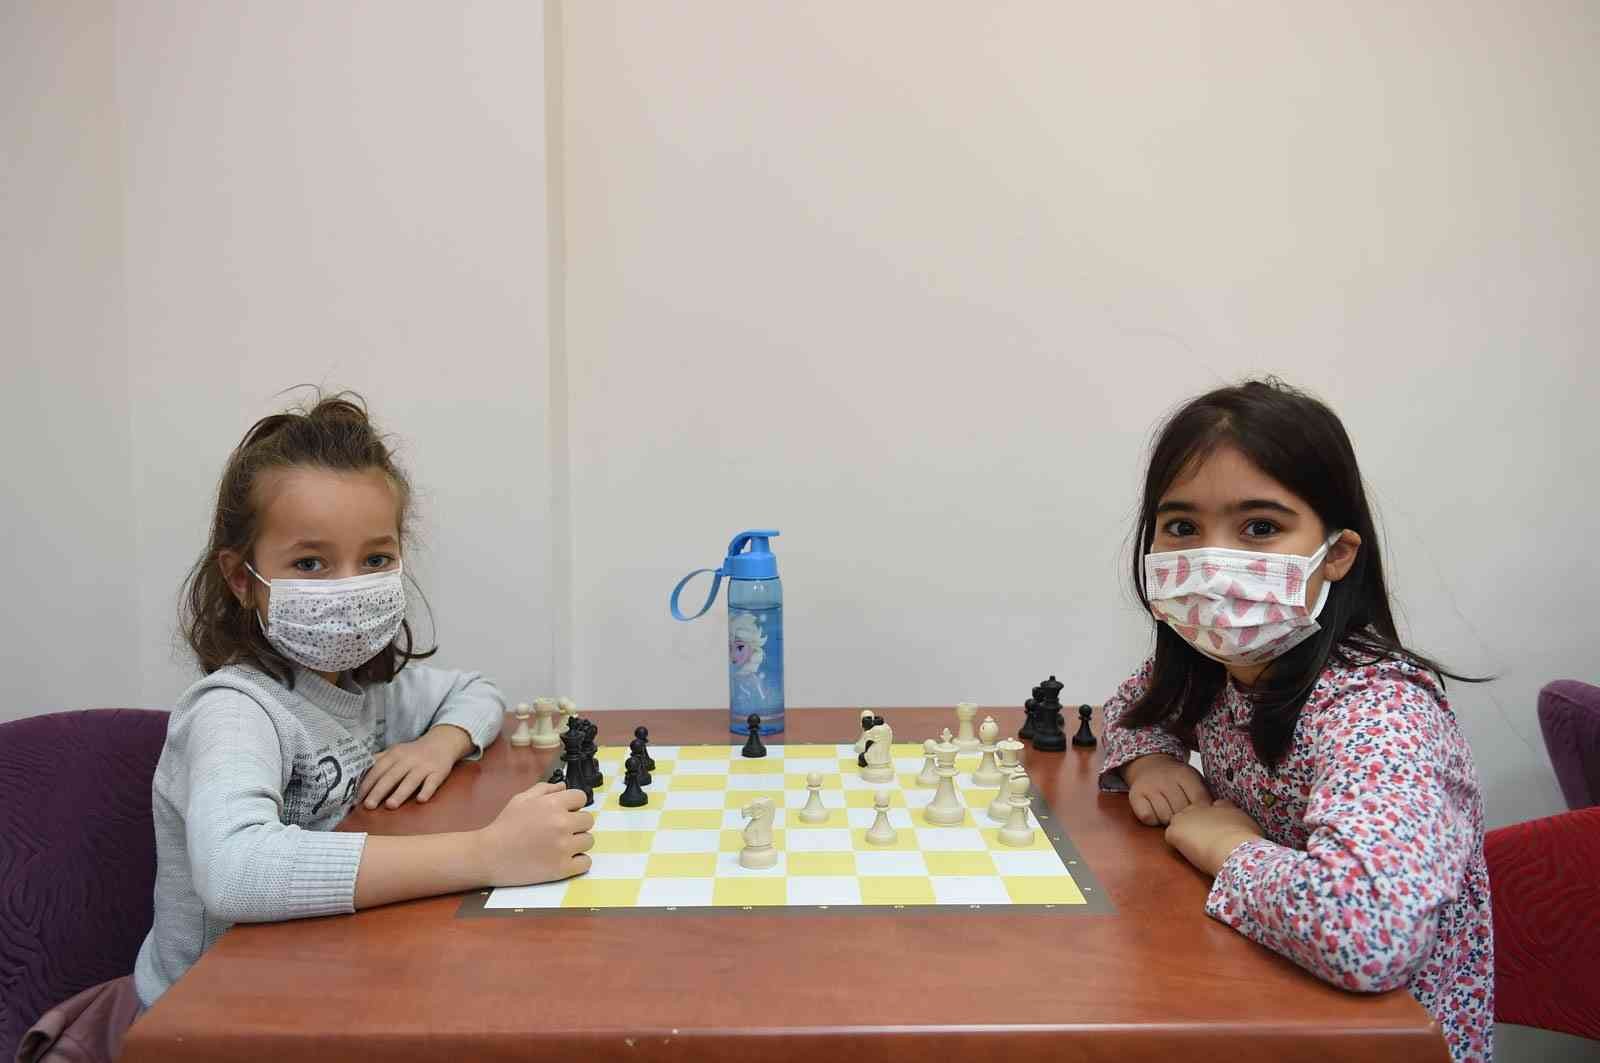 Altındağ Belediyesi, bin çocuğu satrançla buluşturdu #ankara